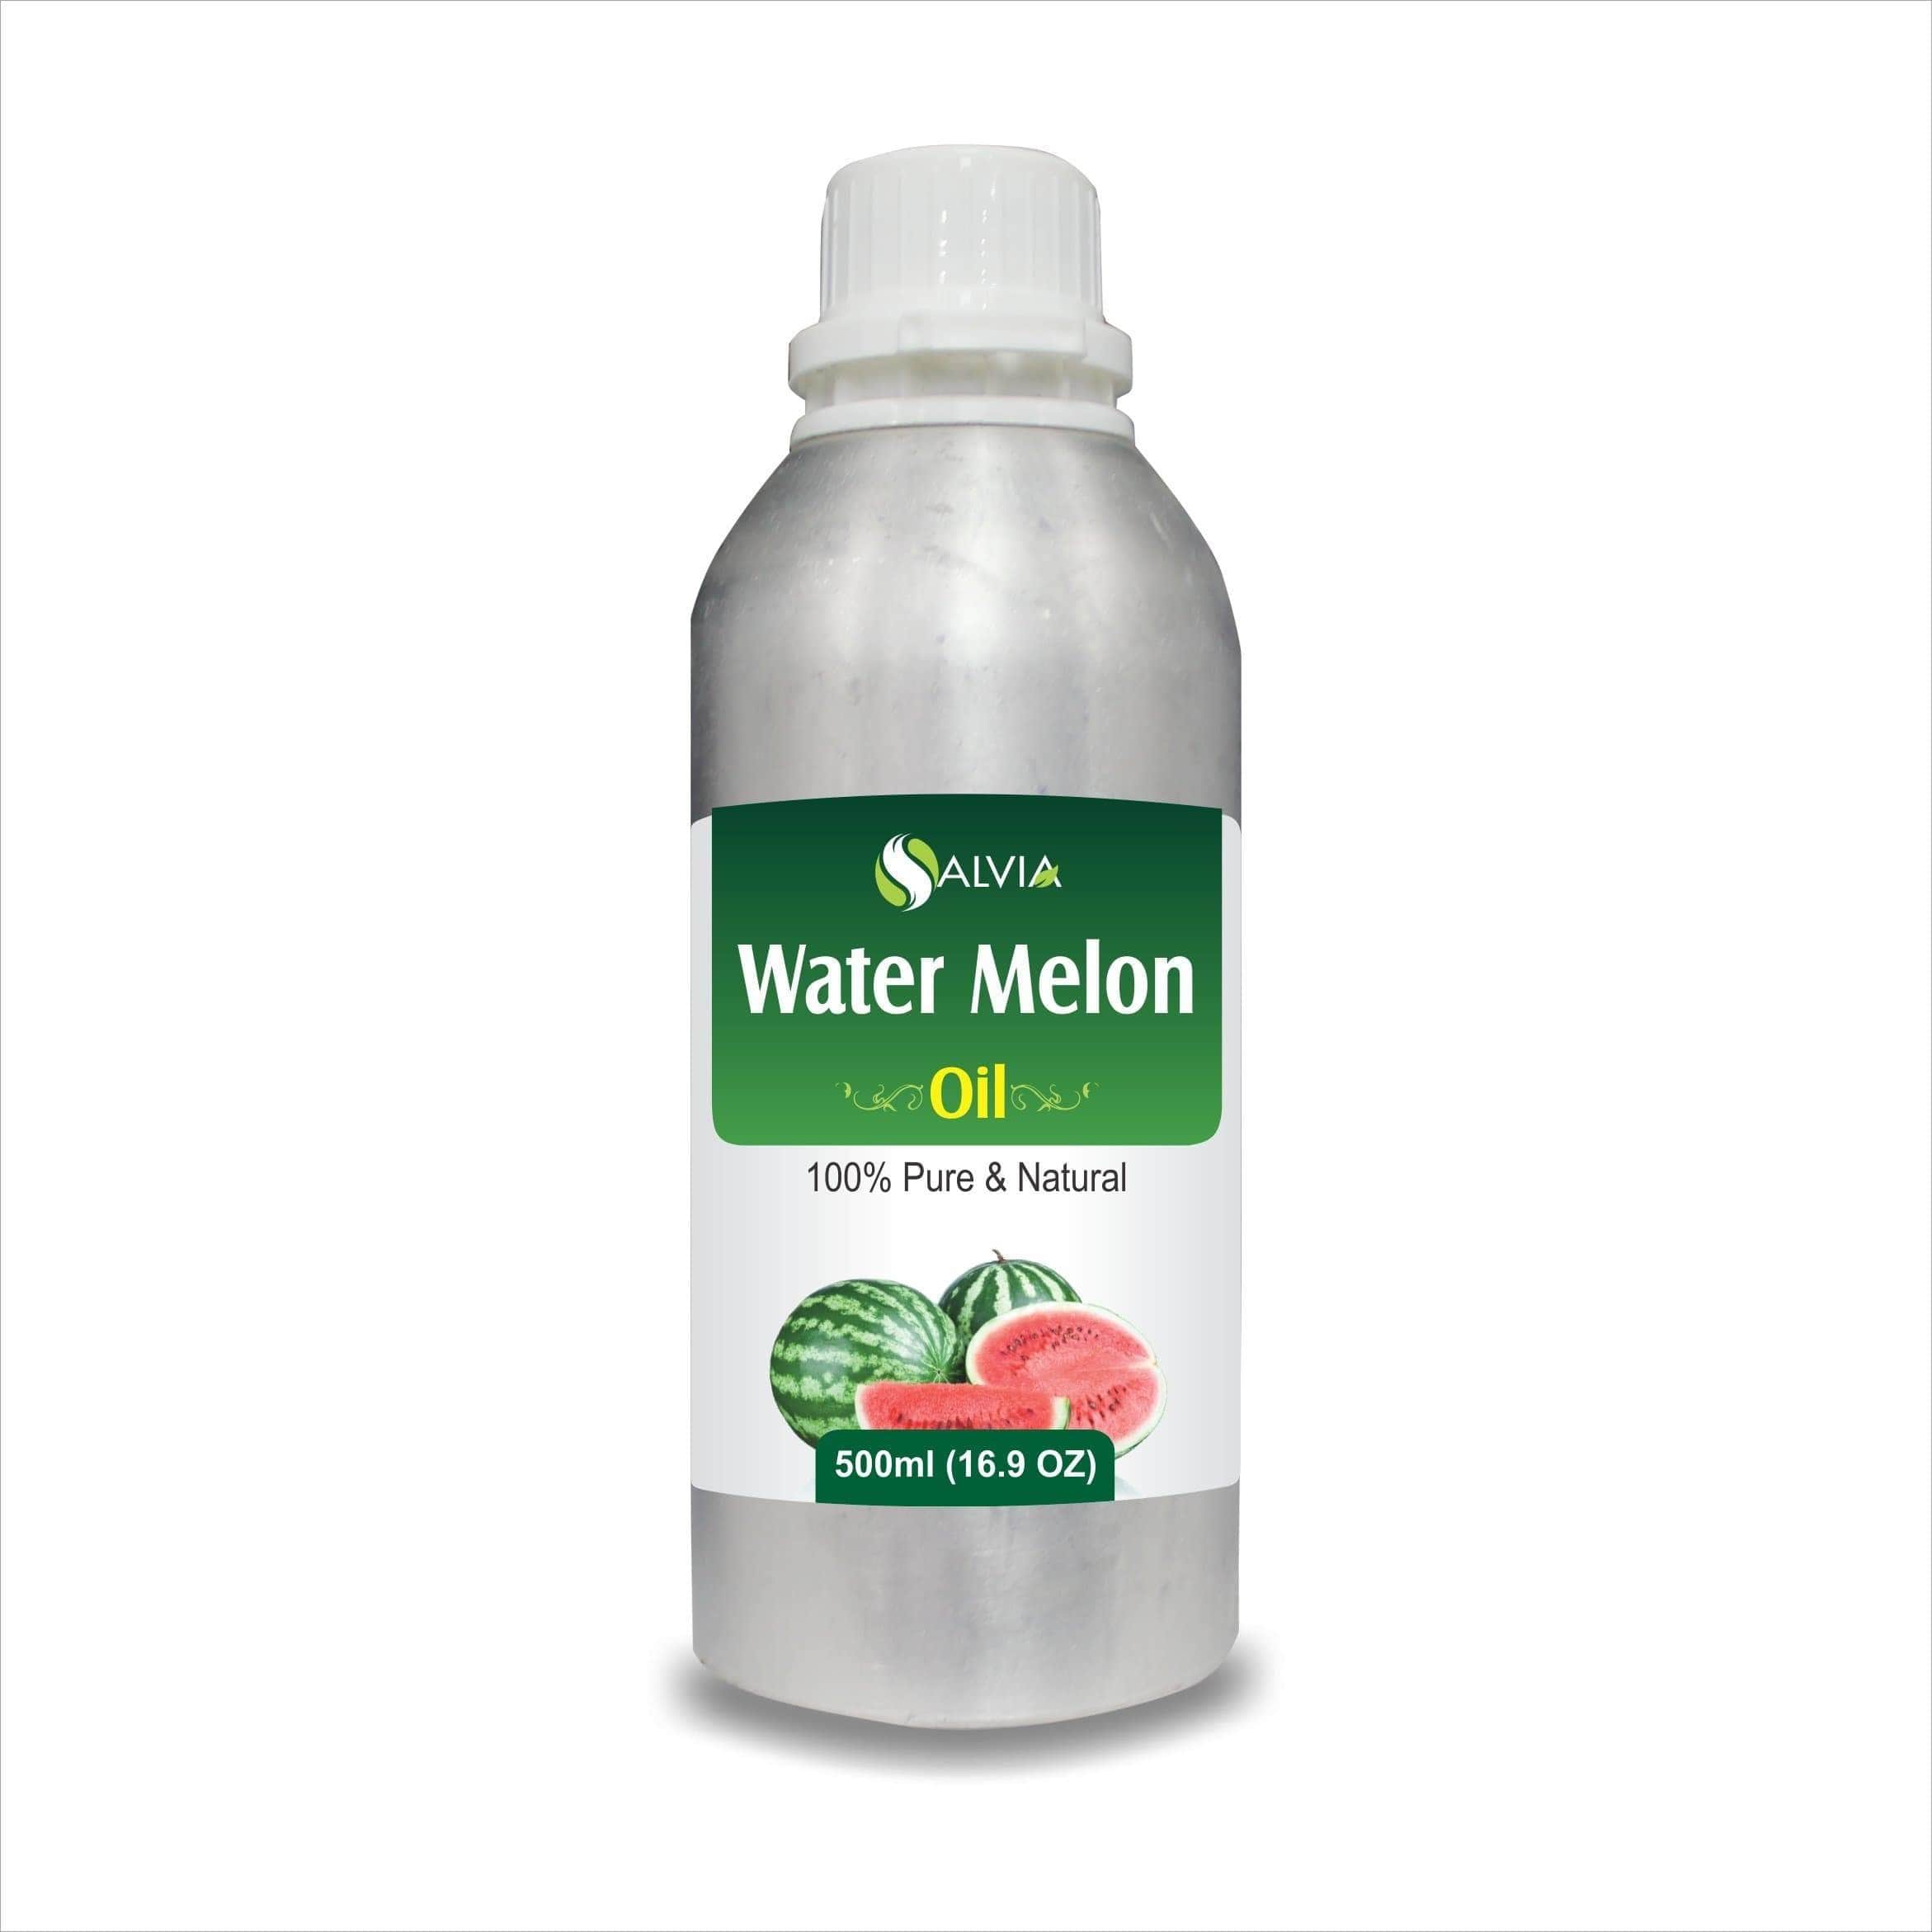 Watermelon Essential Oil – Shoprythm